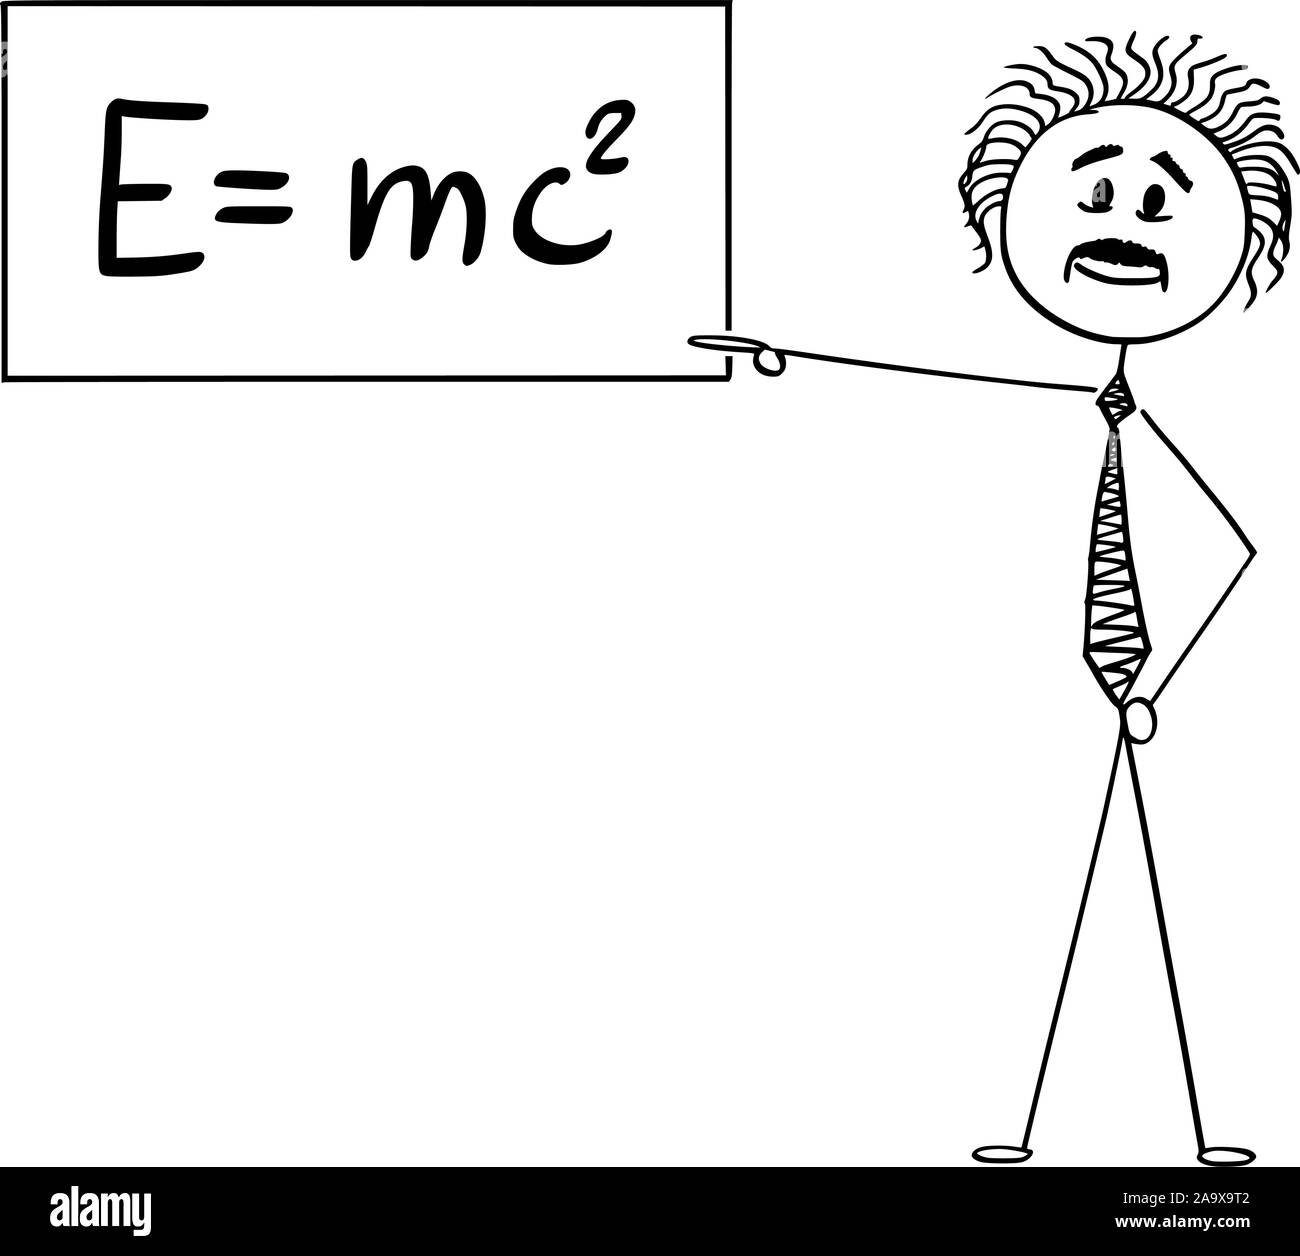 Cartoon vectores stick figura dibujo Ilustración conceptual del científico  Albert Einstein apuntando a firmar con E es igual a mc2 ecuación de la  teoría especial de la relatividad Imagen Vector de stock -